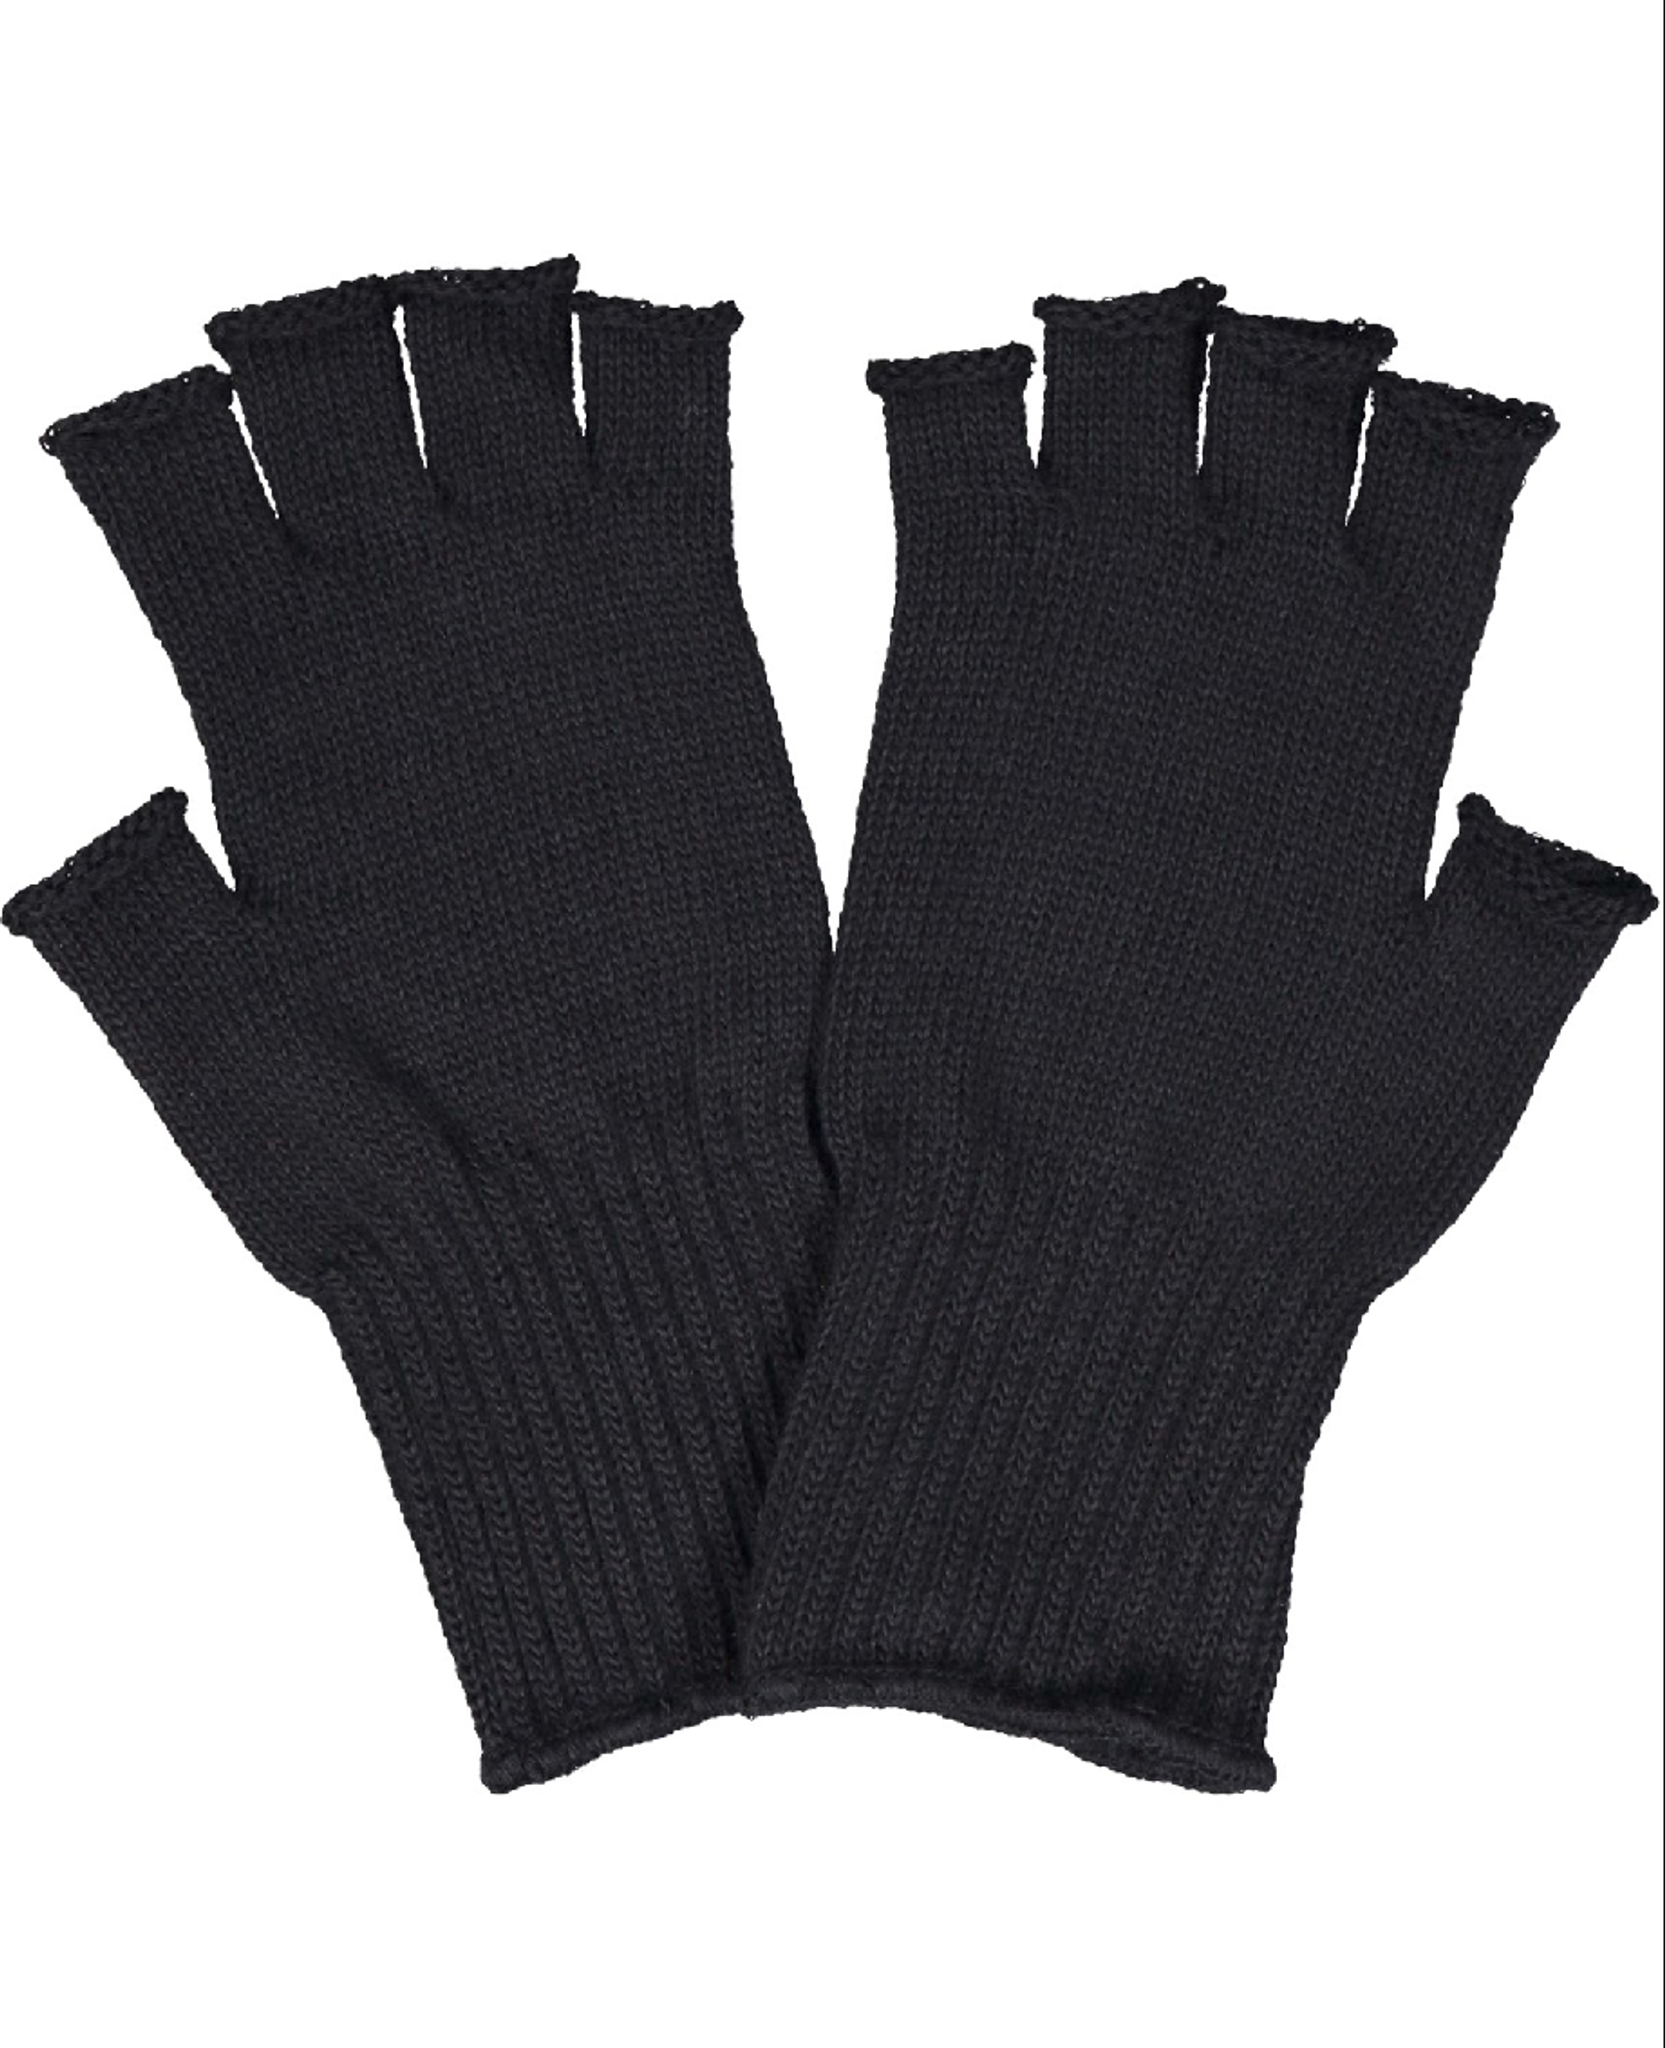 Unisex Black Fingerless Gloves Winter Gloves for Kids and Adults 